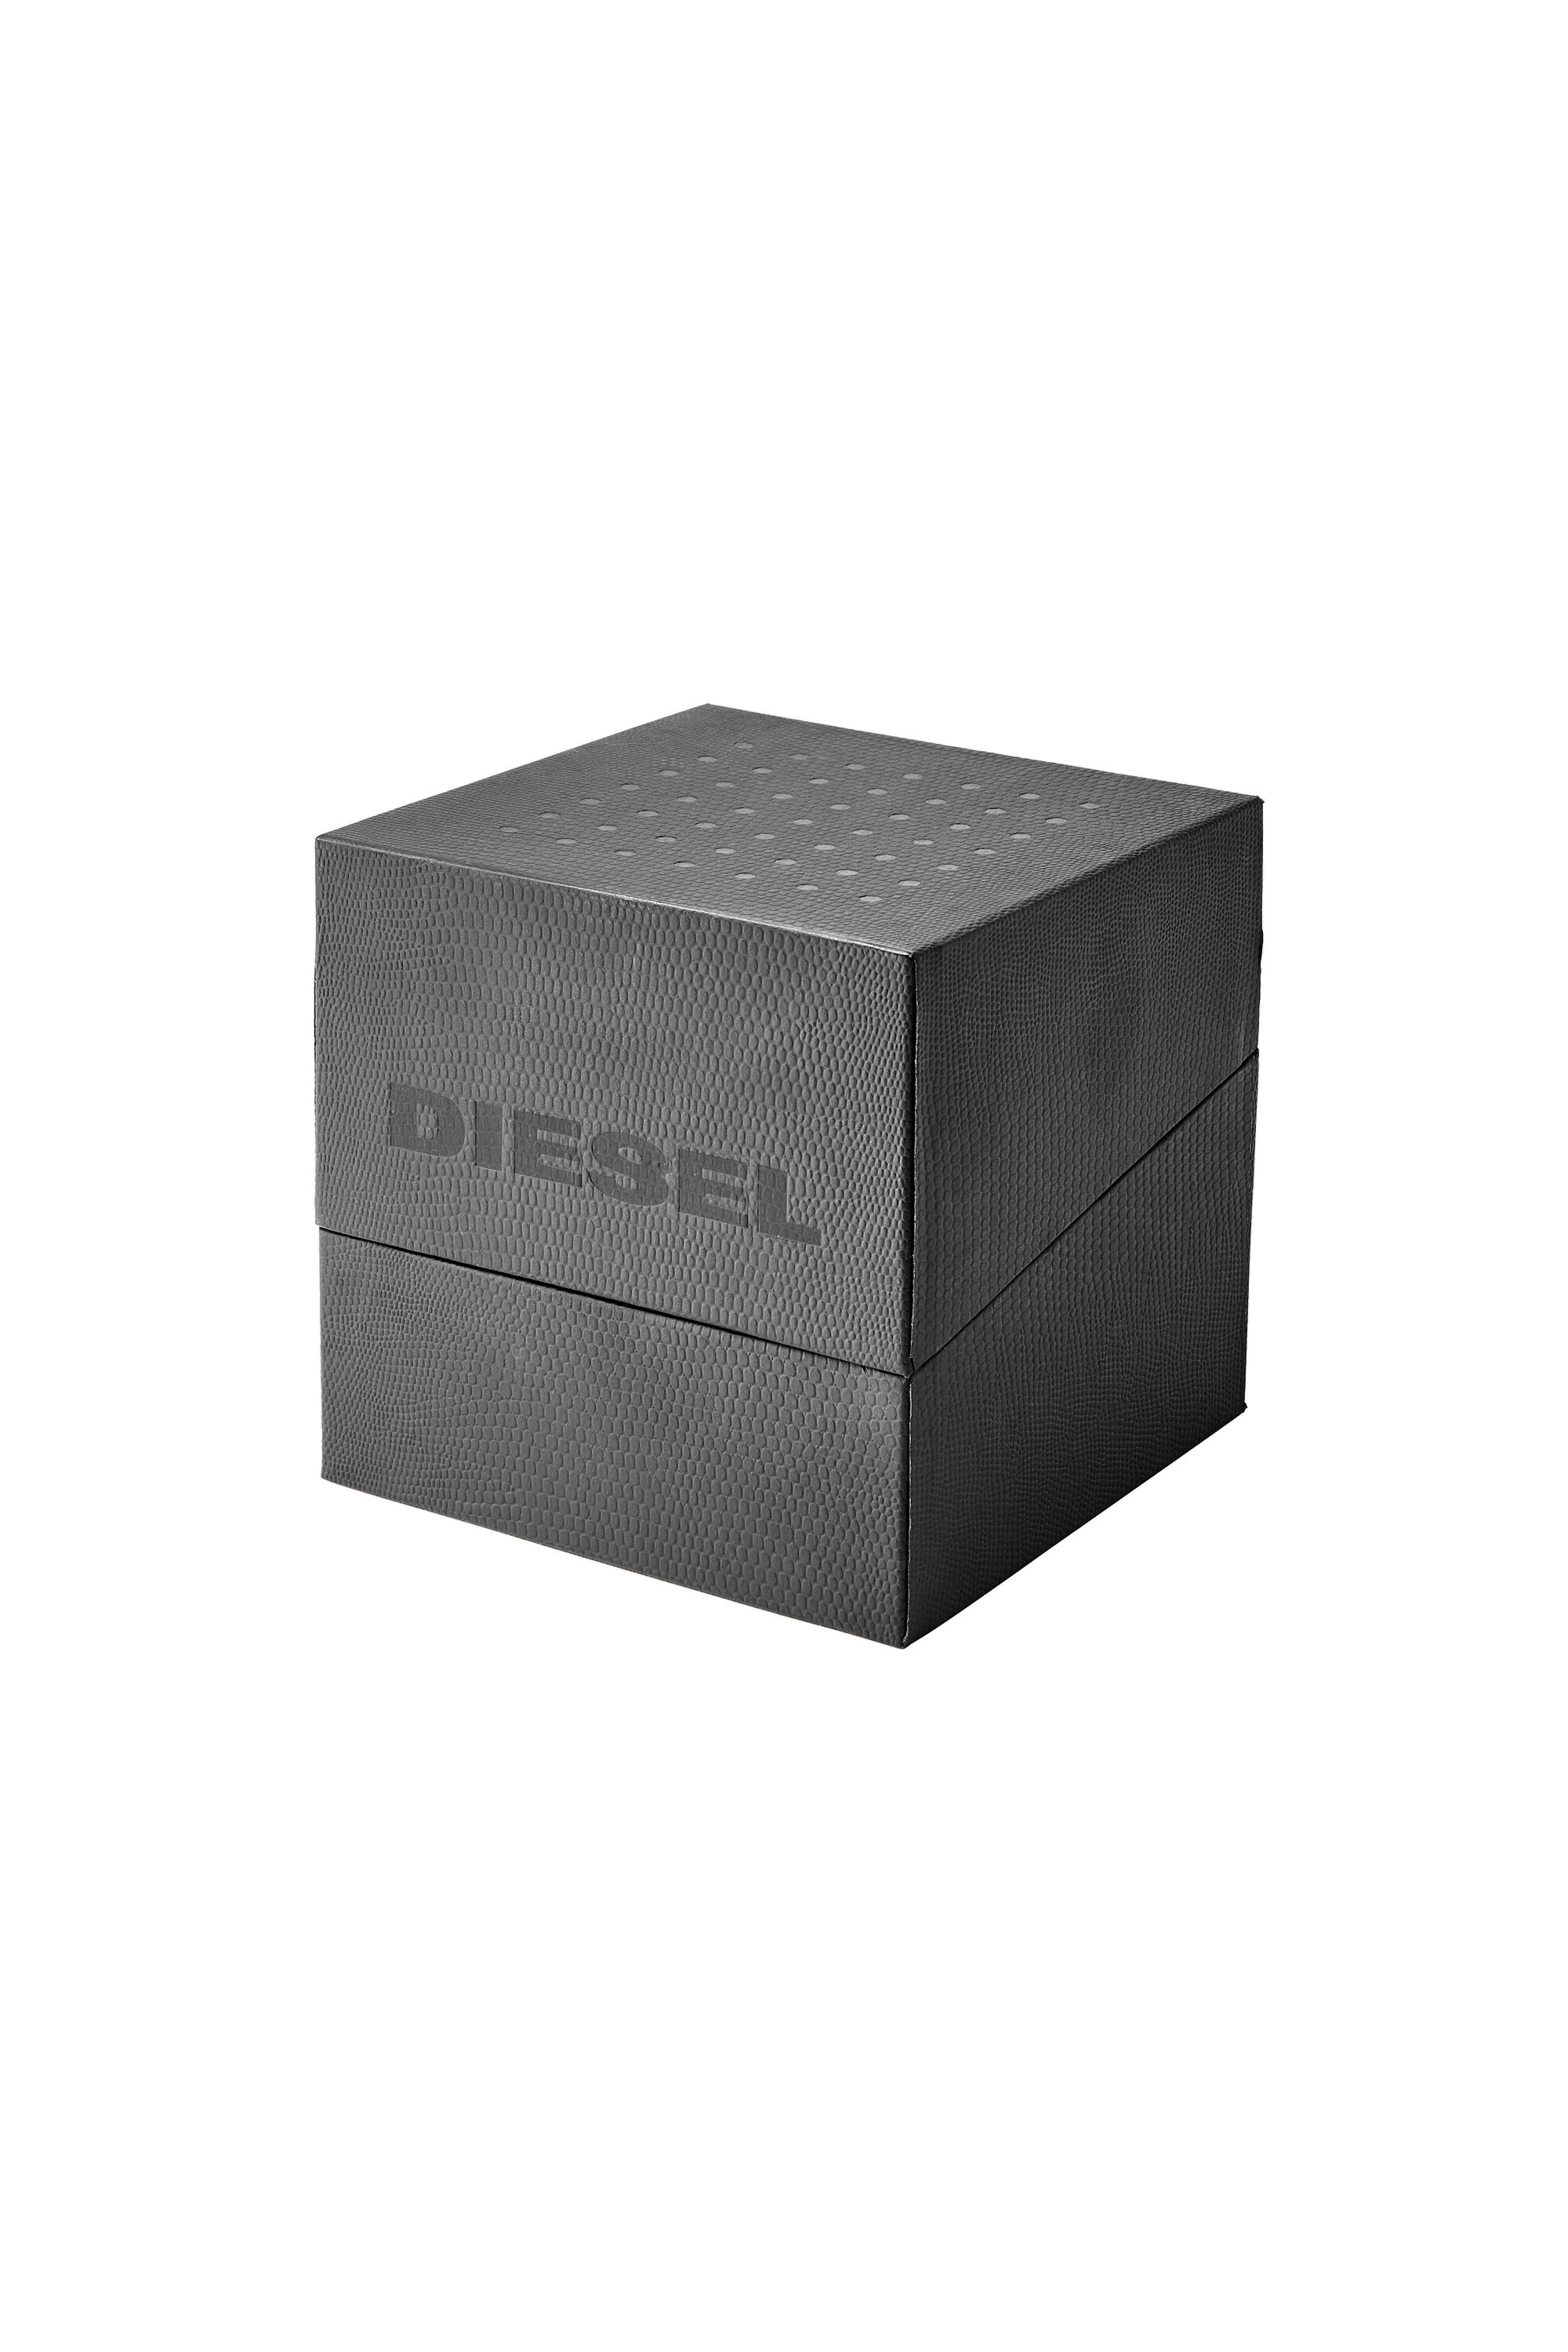 Diesel - DZ1902, Grau - Image 5